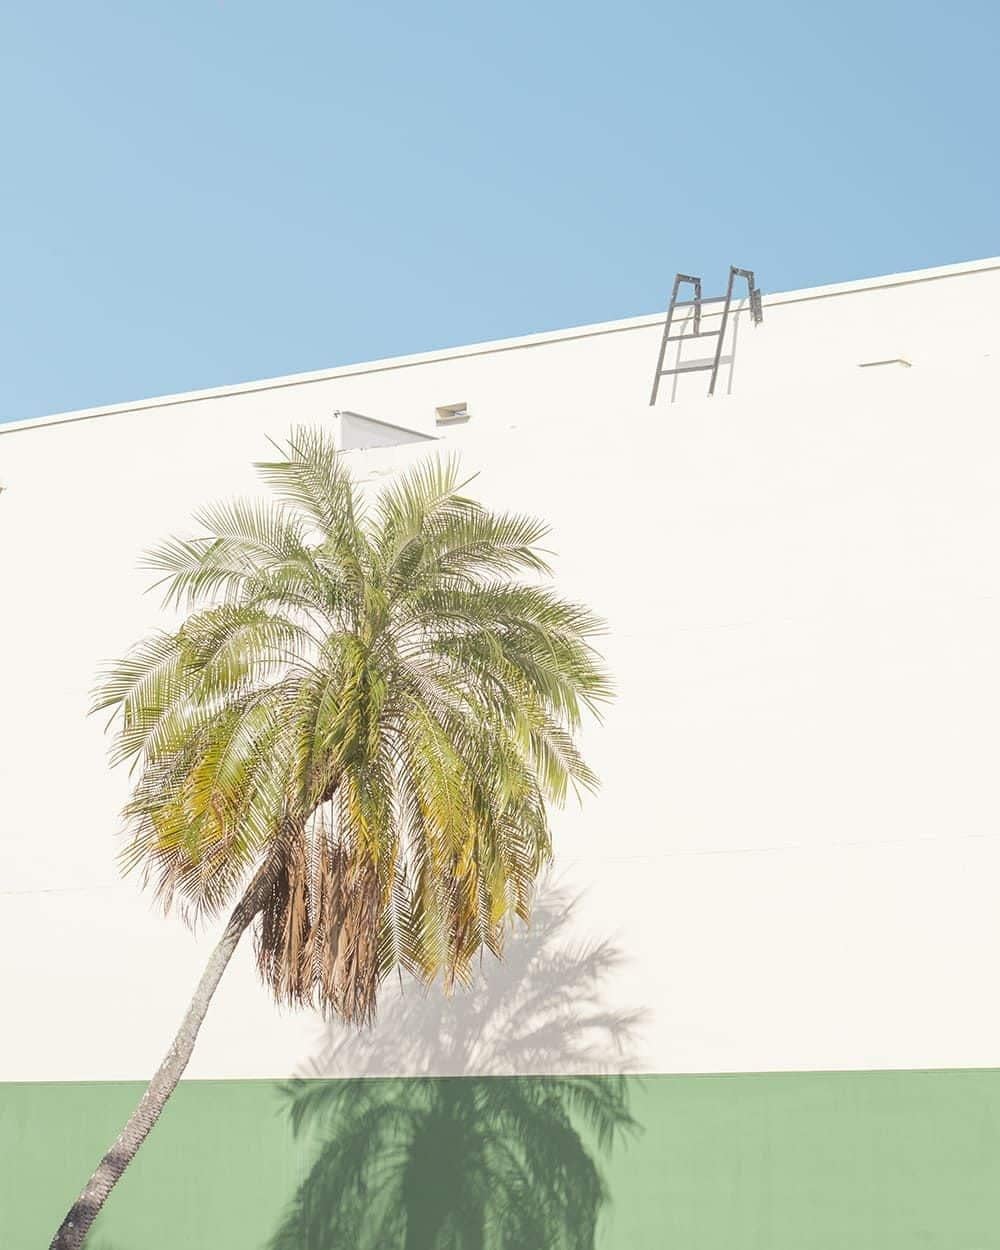 DIALOGUE 09 est une œuvre du photographe français contemporain Matthieu Venot. Dans cette série, il parcourt la ville de Miami à la recherche d'architecture déco. Avec son appareil photo, il découpe le paysage urbain en images où l'aspect graphique